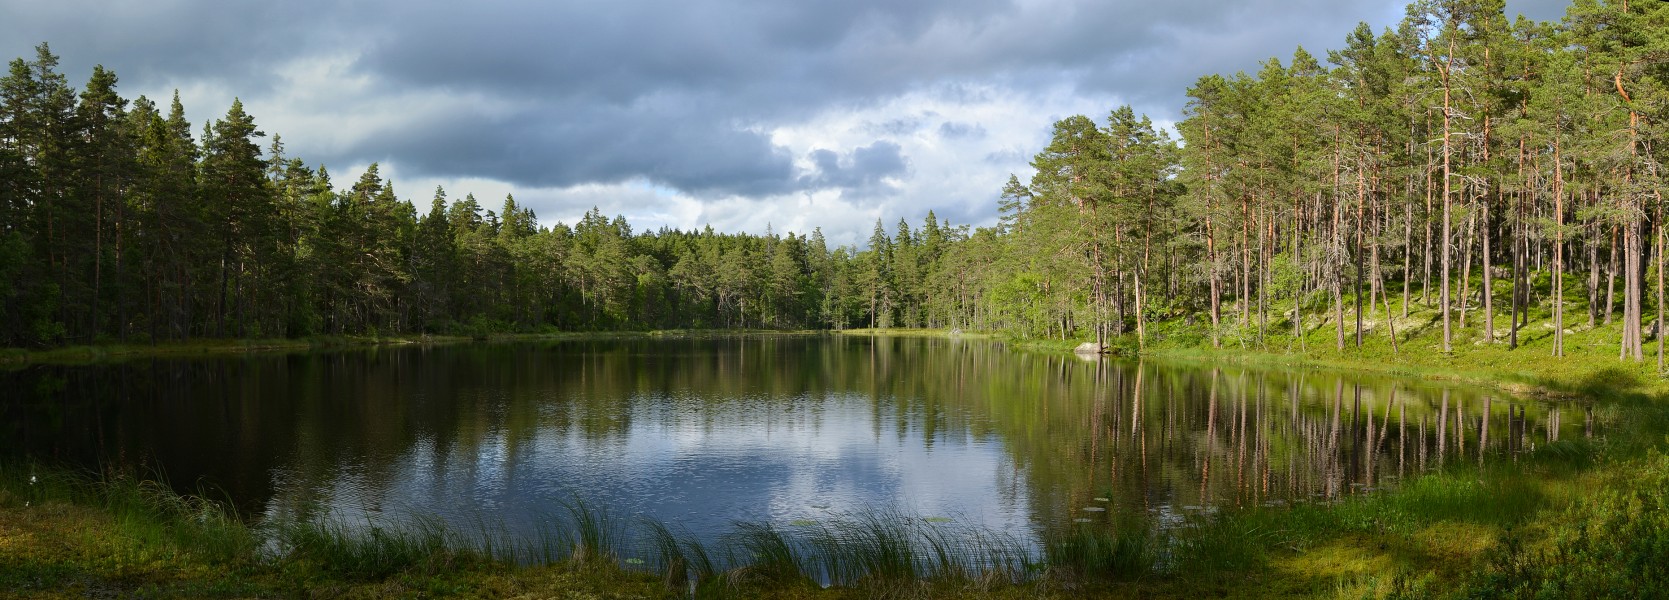 Norra Kvill National Park, Sweden (by Pudelek)